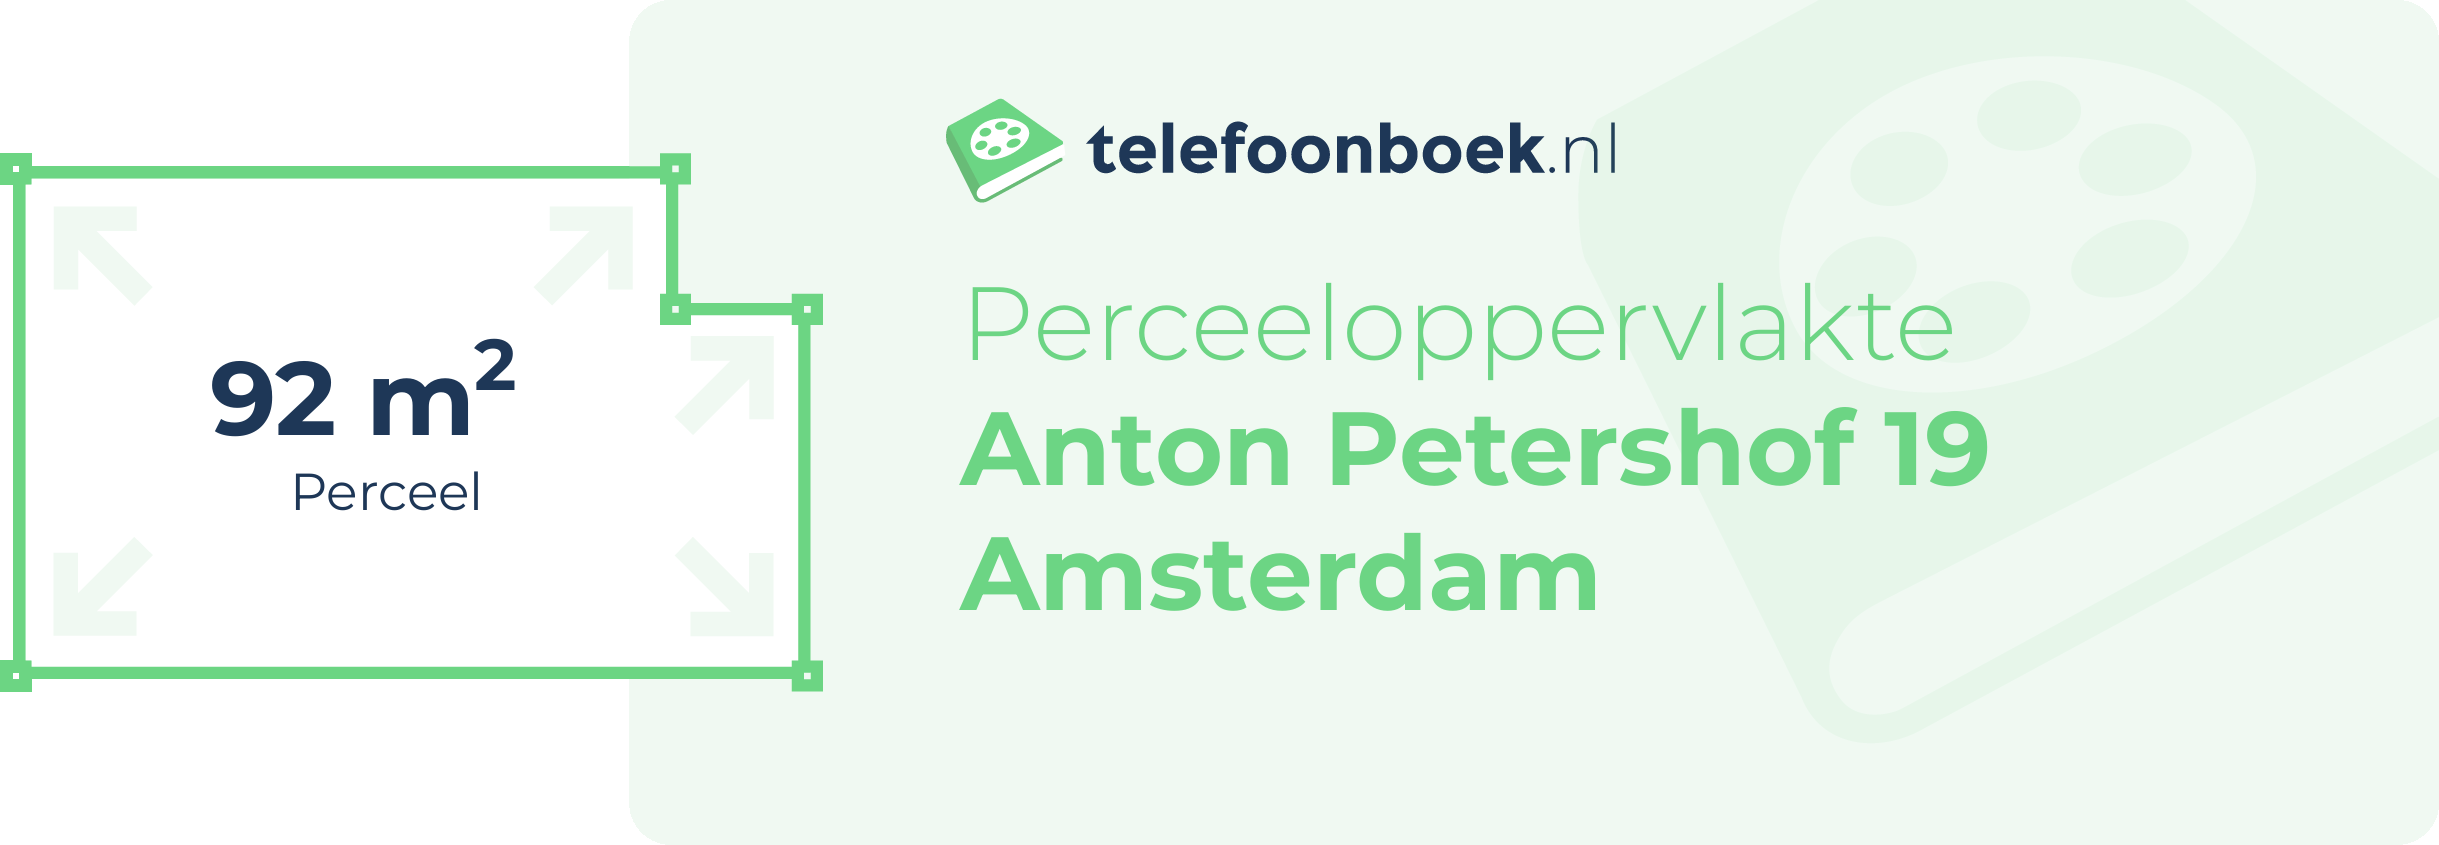 Perceeloppervlakte Anton Petershof 19 Amsterdam